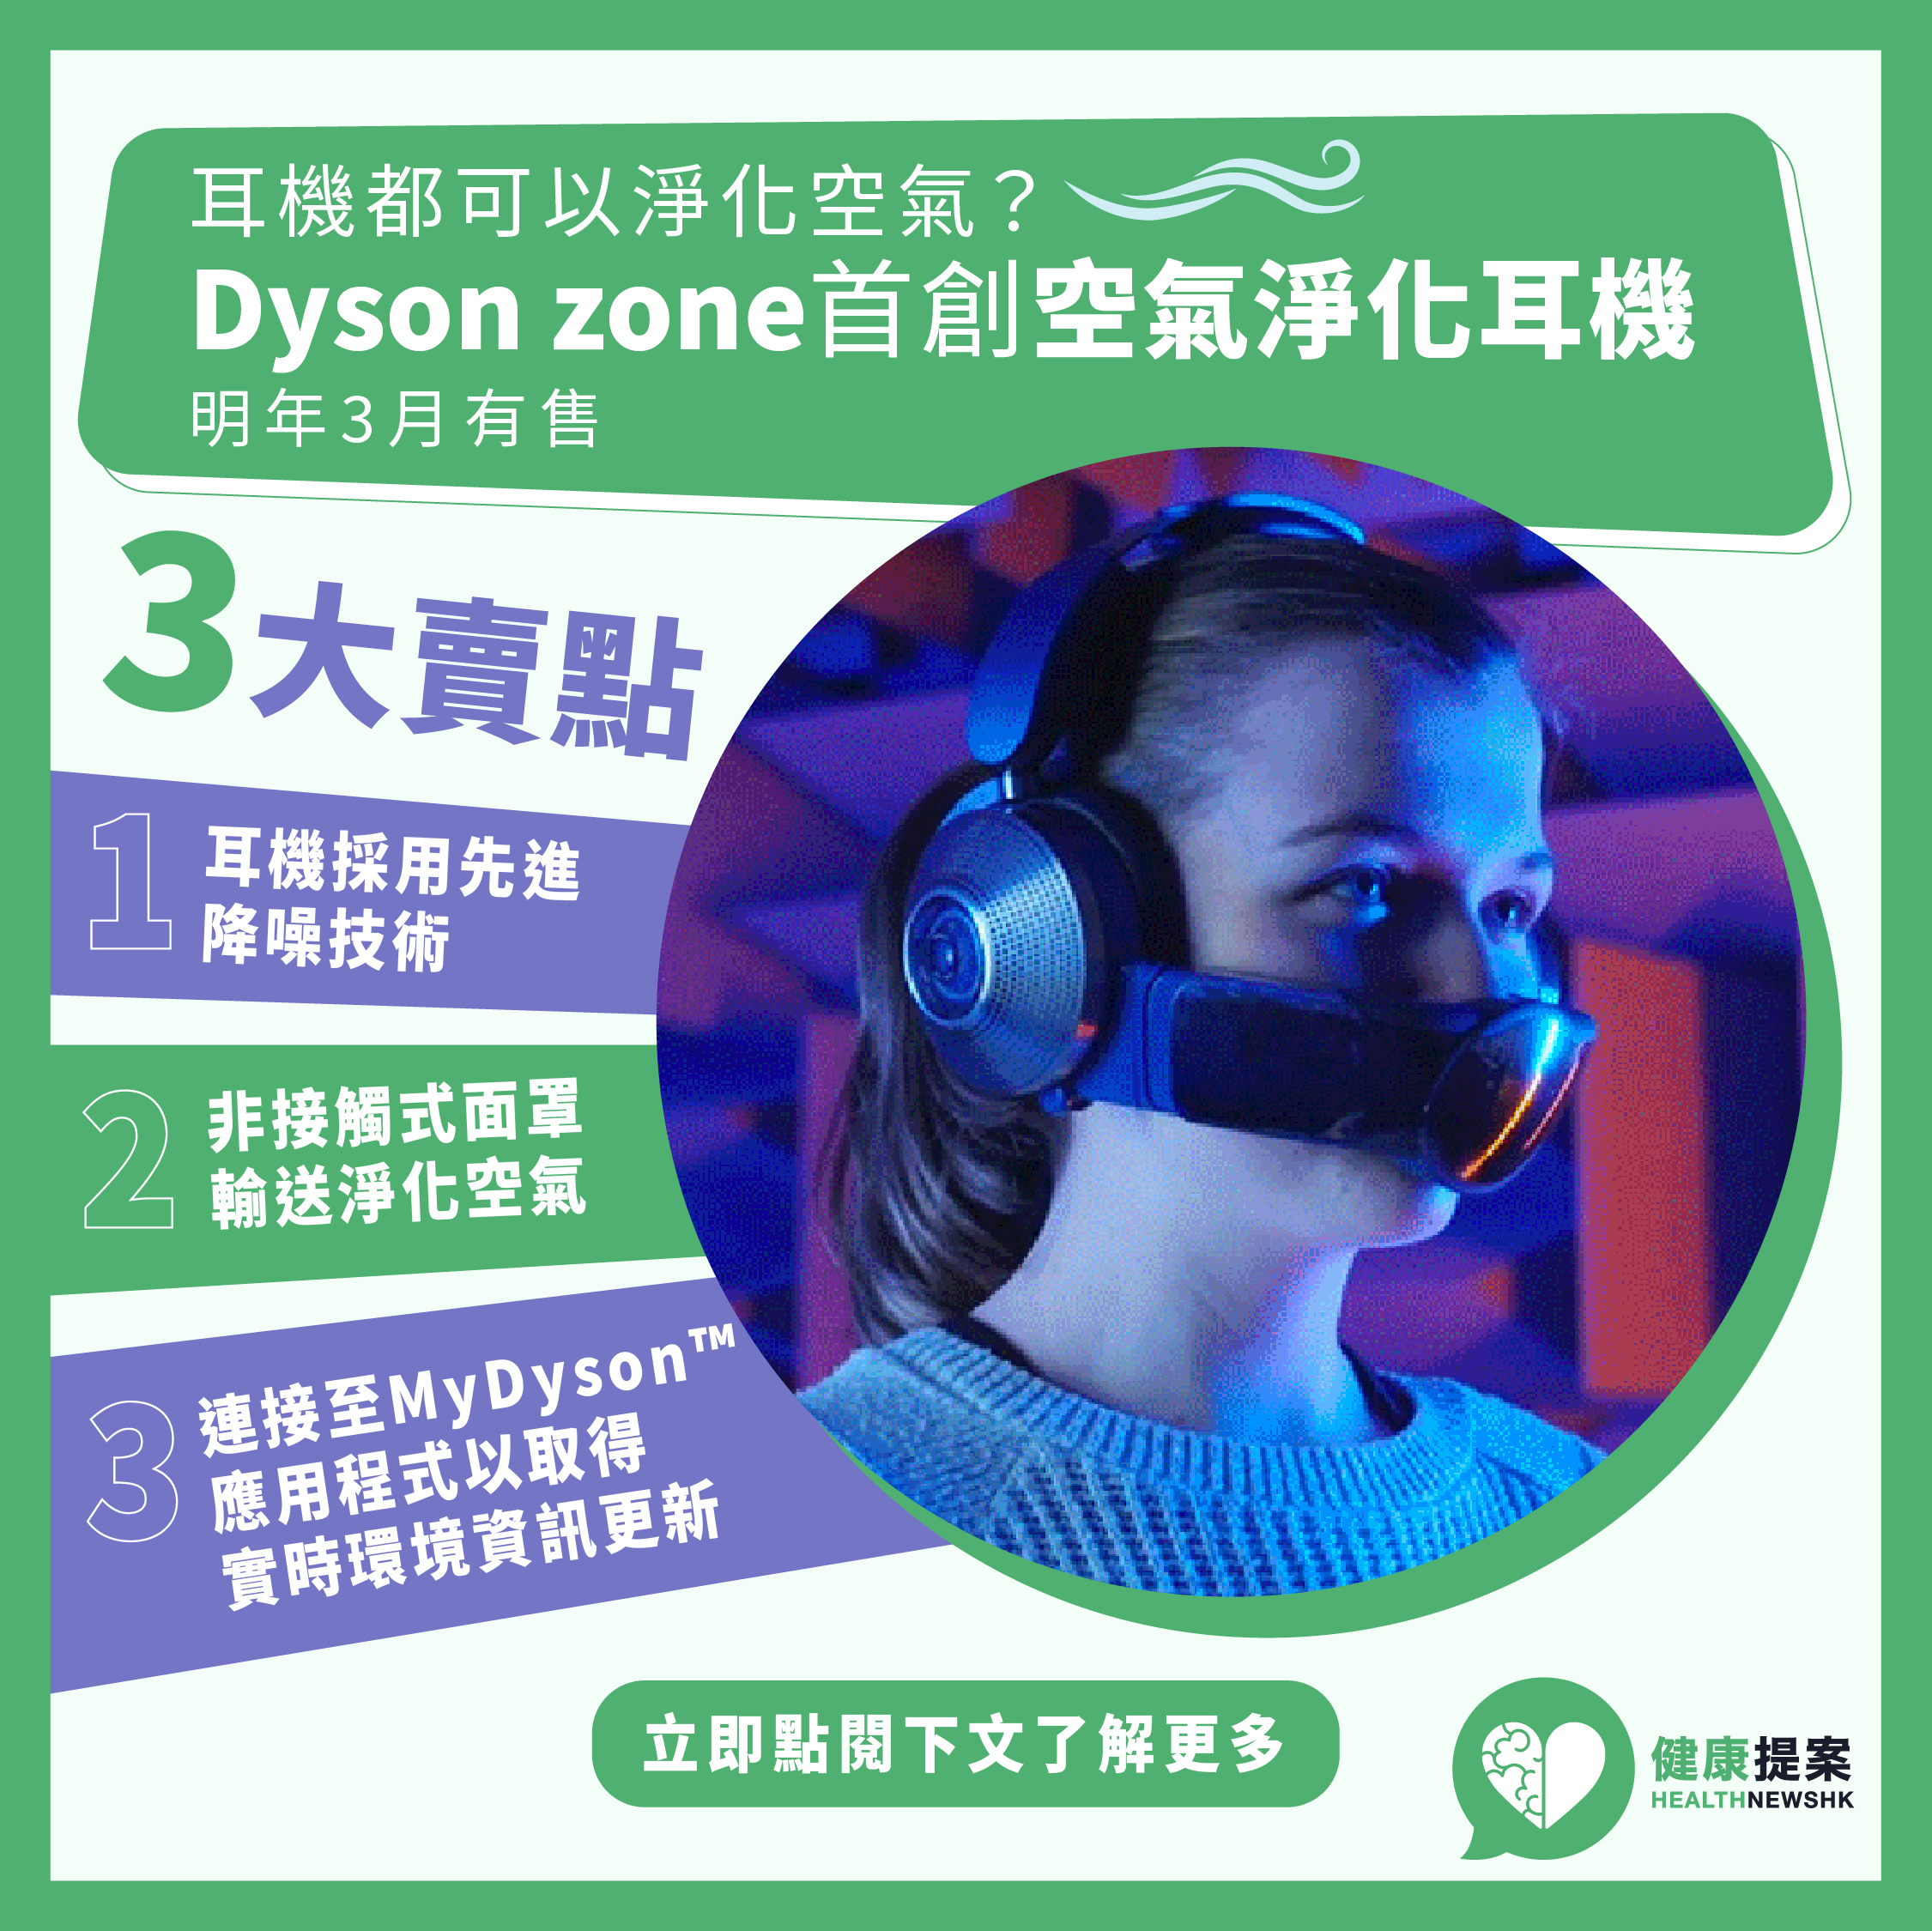 劃時代設計 全新Dyson zone空氣淨化耳機 明年3月有售